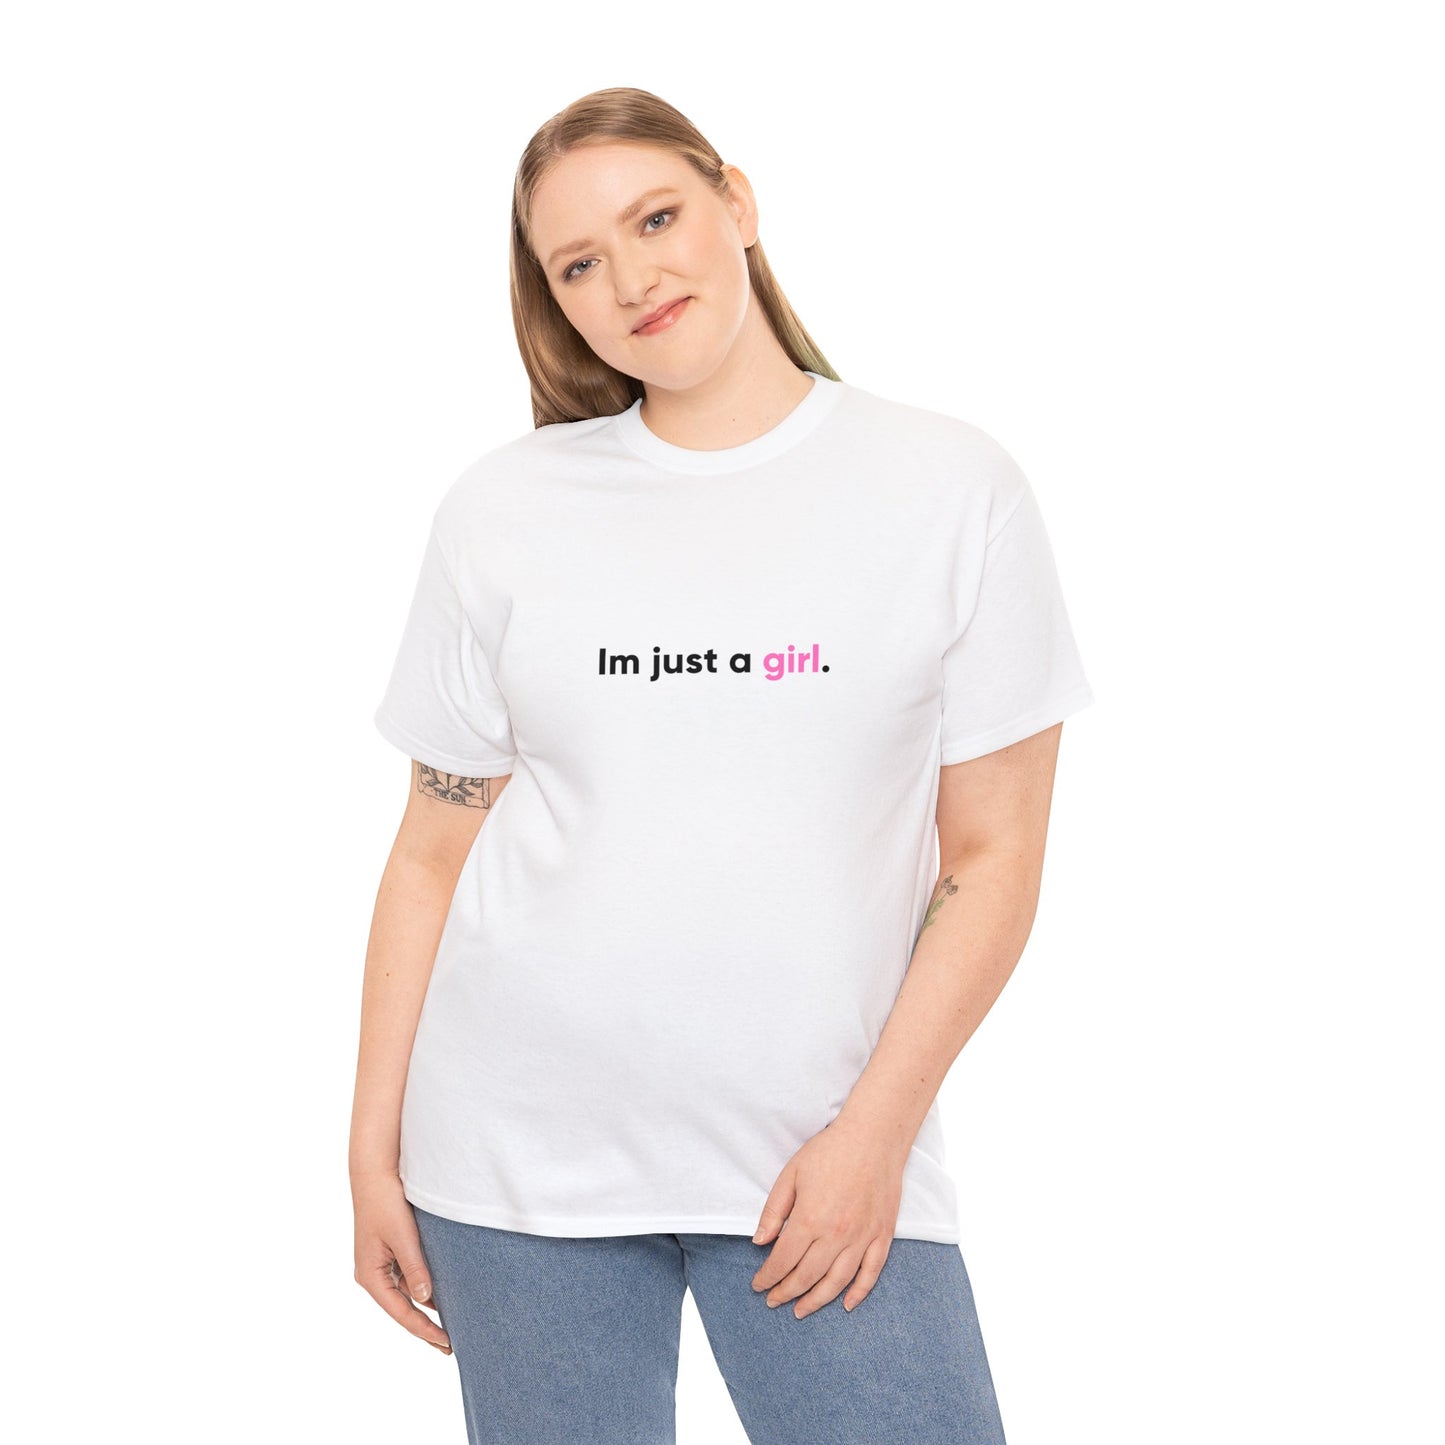 Just a Girl shirt